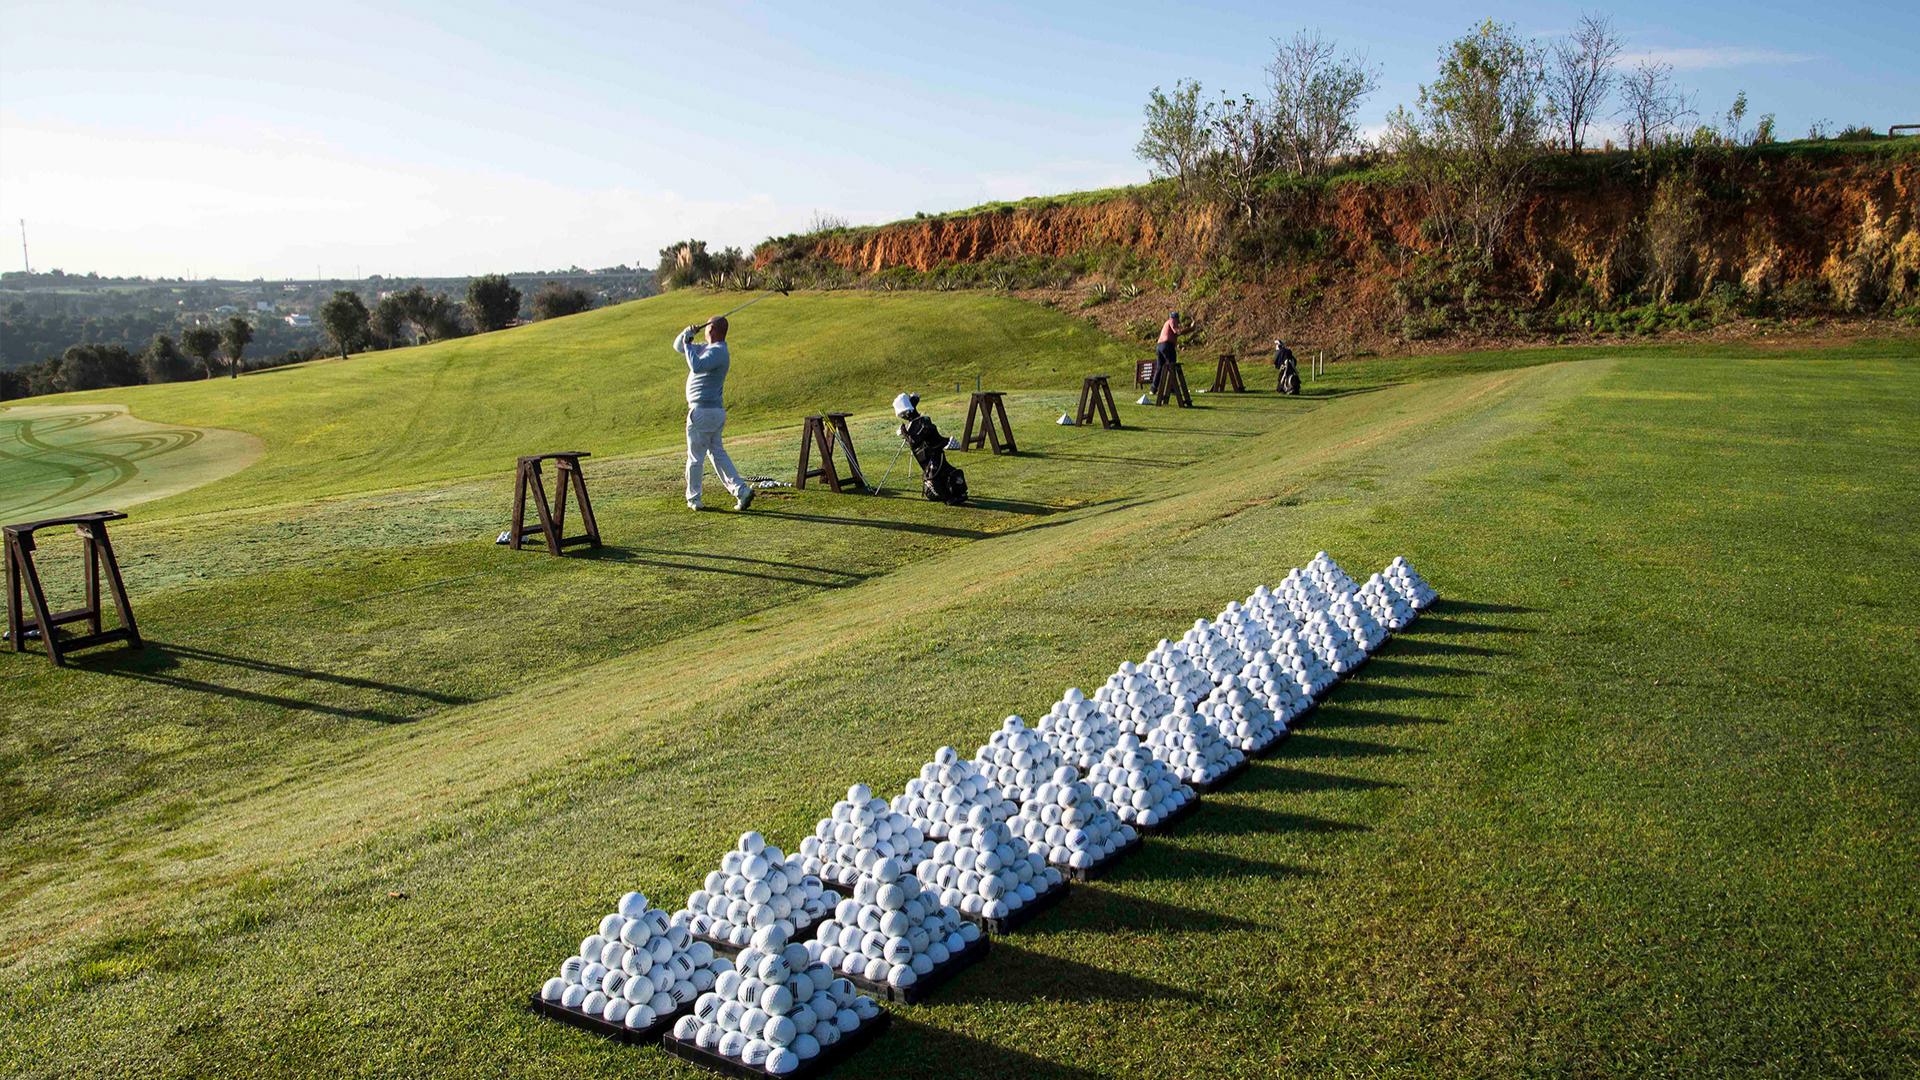 Jogue golfe no futuro, no Algarve!